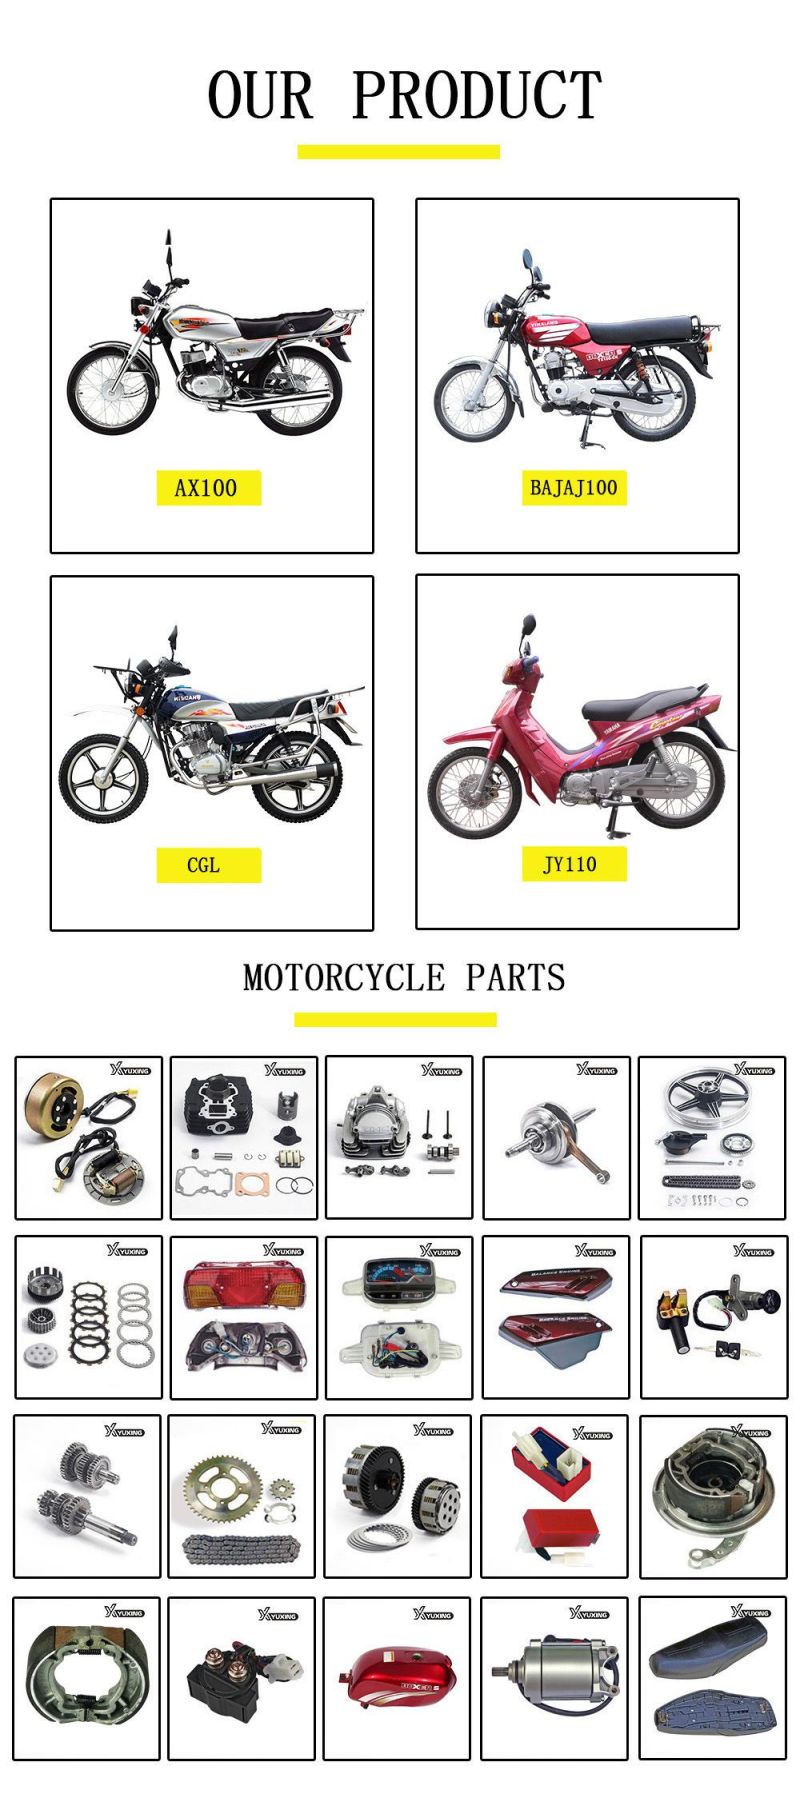 Motorcycle Parts Motorcycle Spring Steel Rear Shock Absorber for Bajaj